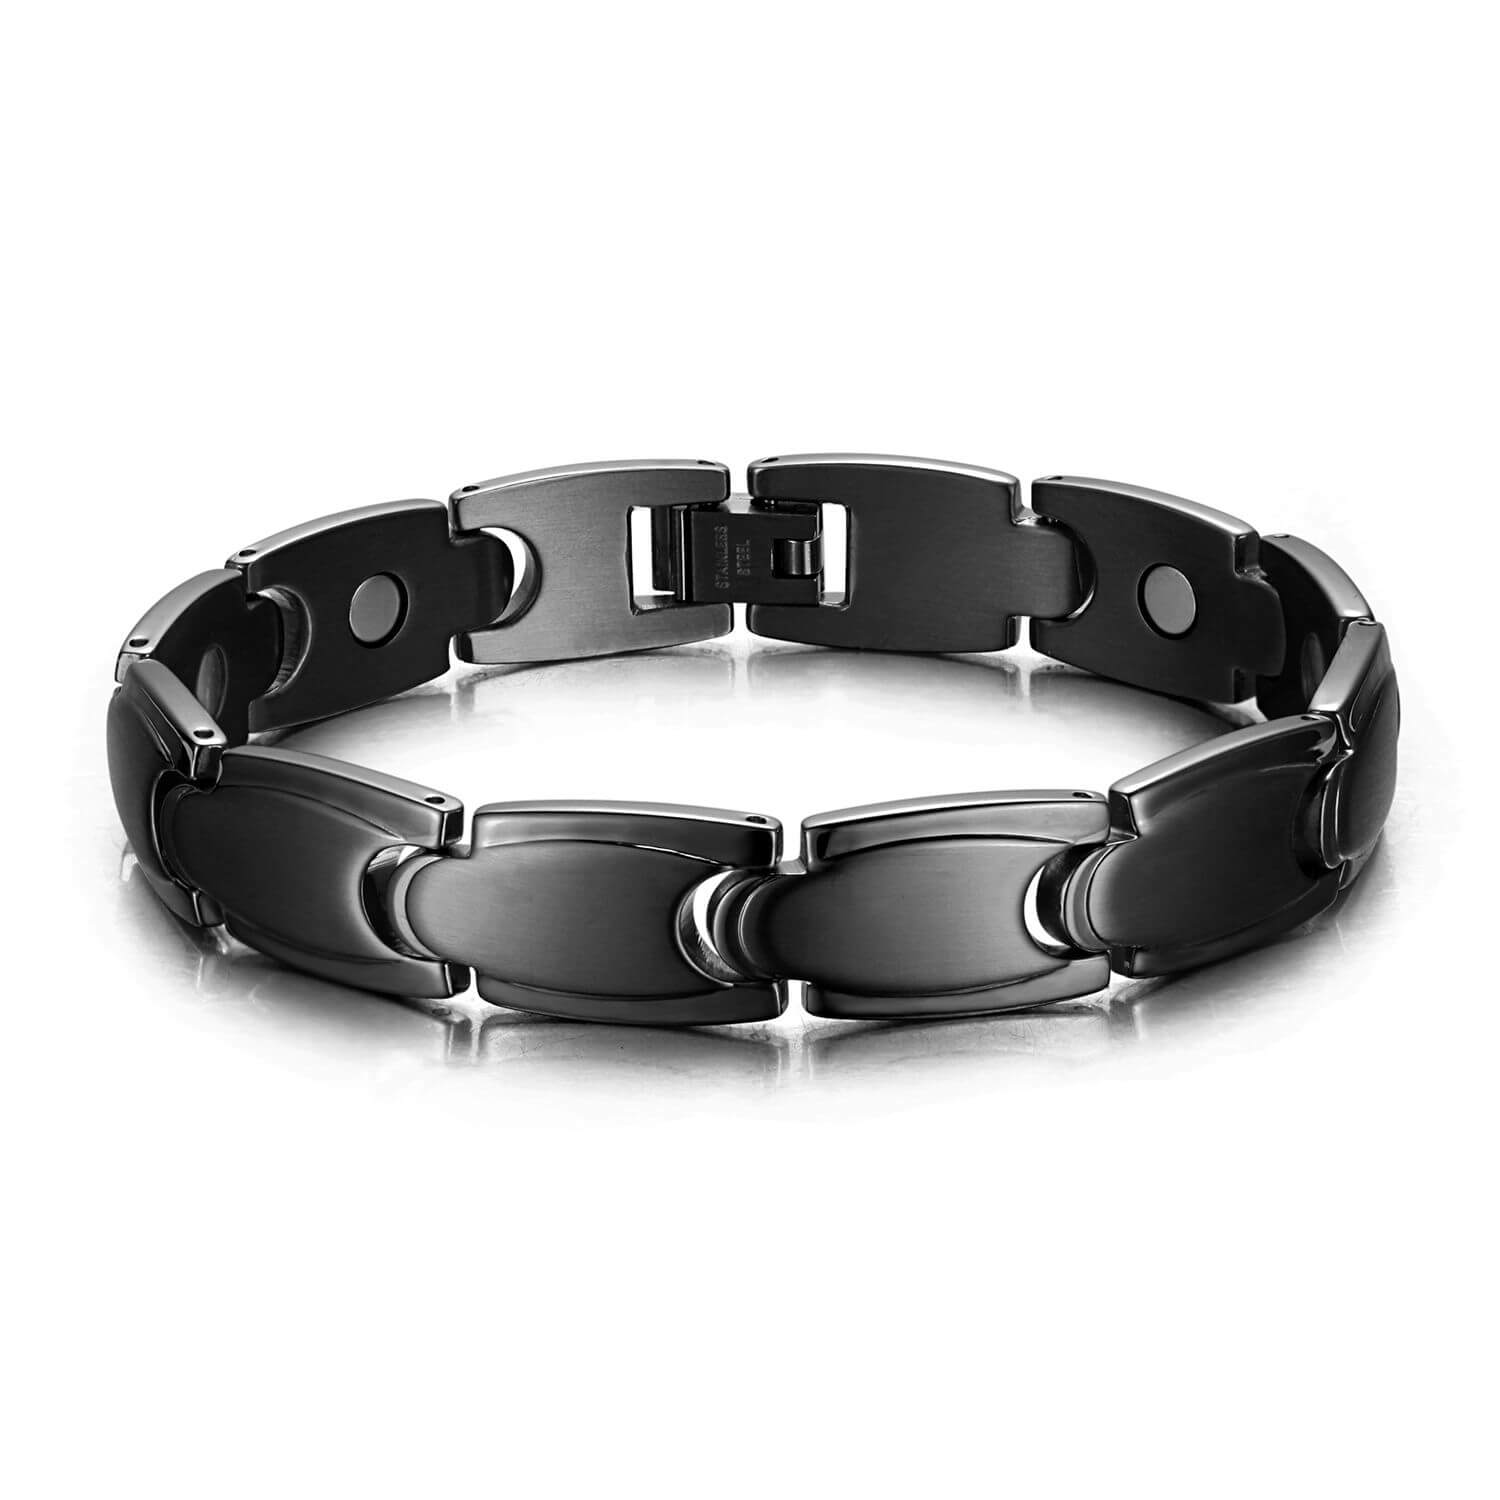 Le Bracelet Magnétique en Cuir Noir : Votre Accessoire Stylé pour